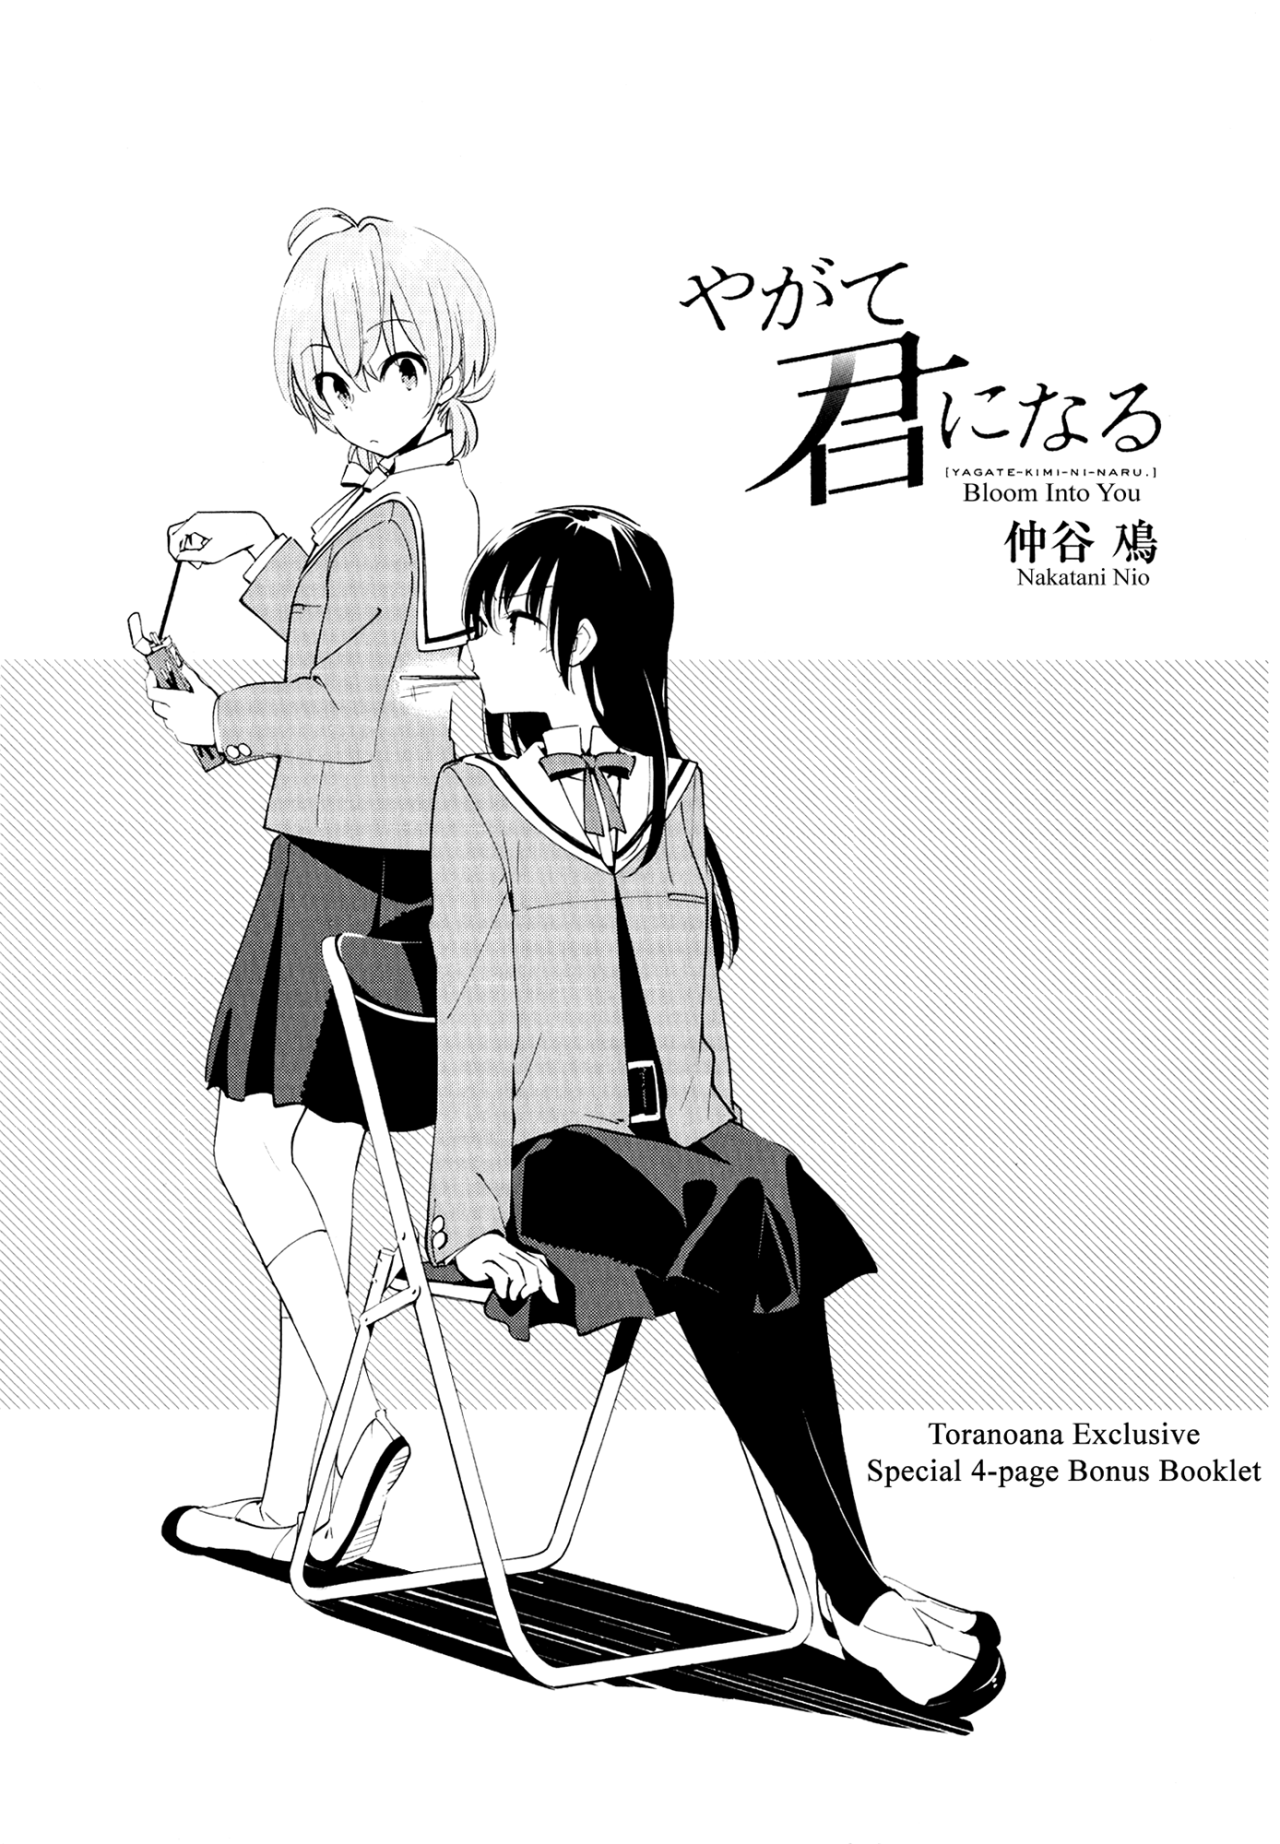 Yagate Kimi ni Naru (Bloom Into You) color page : r/manga